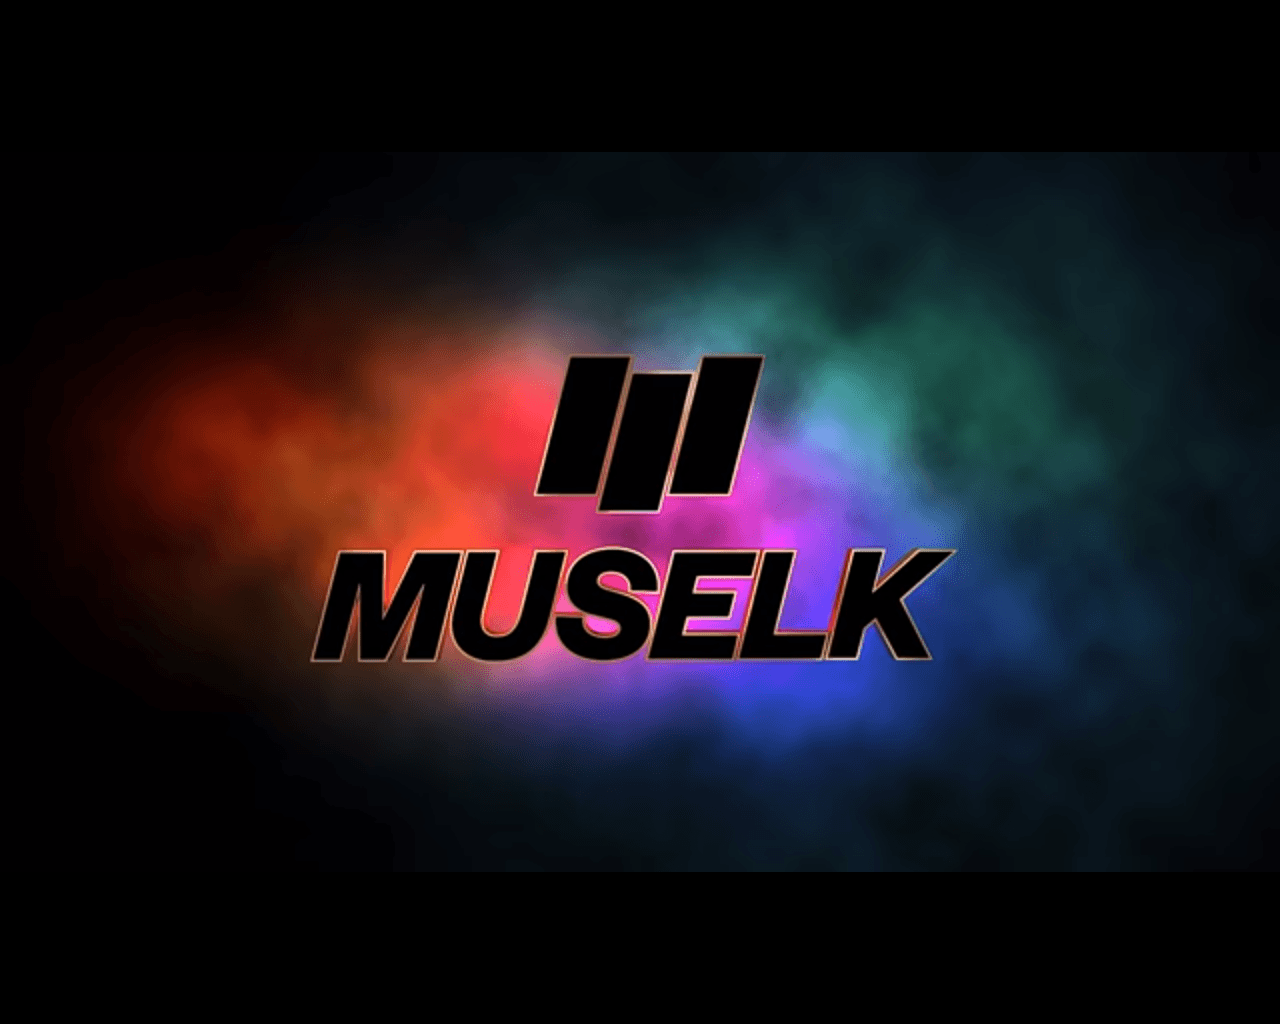 Muselk Logo Wallpapers